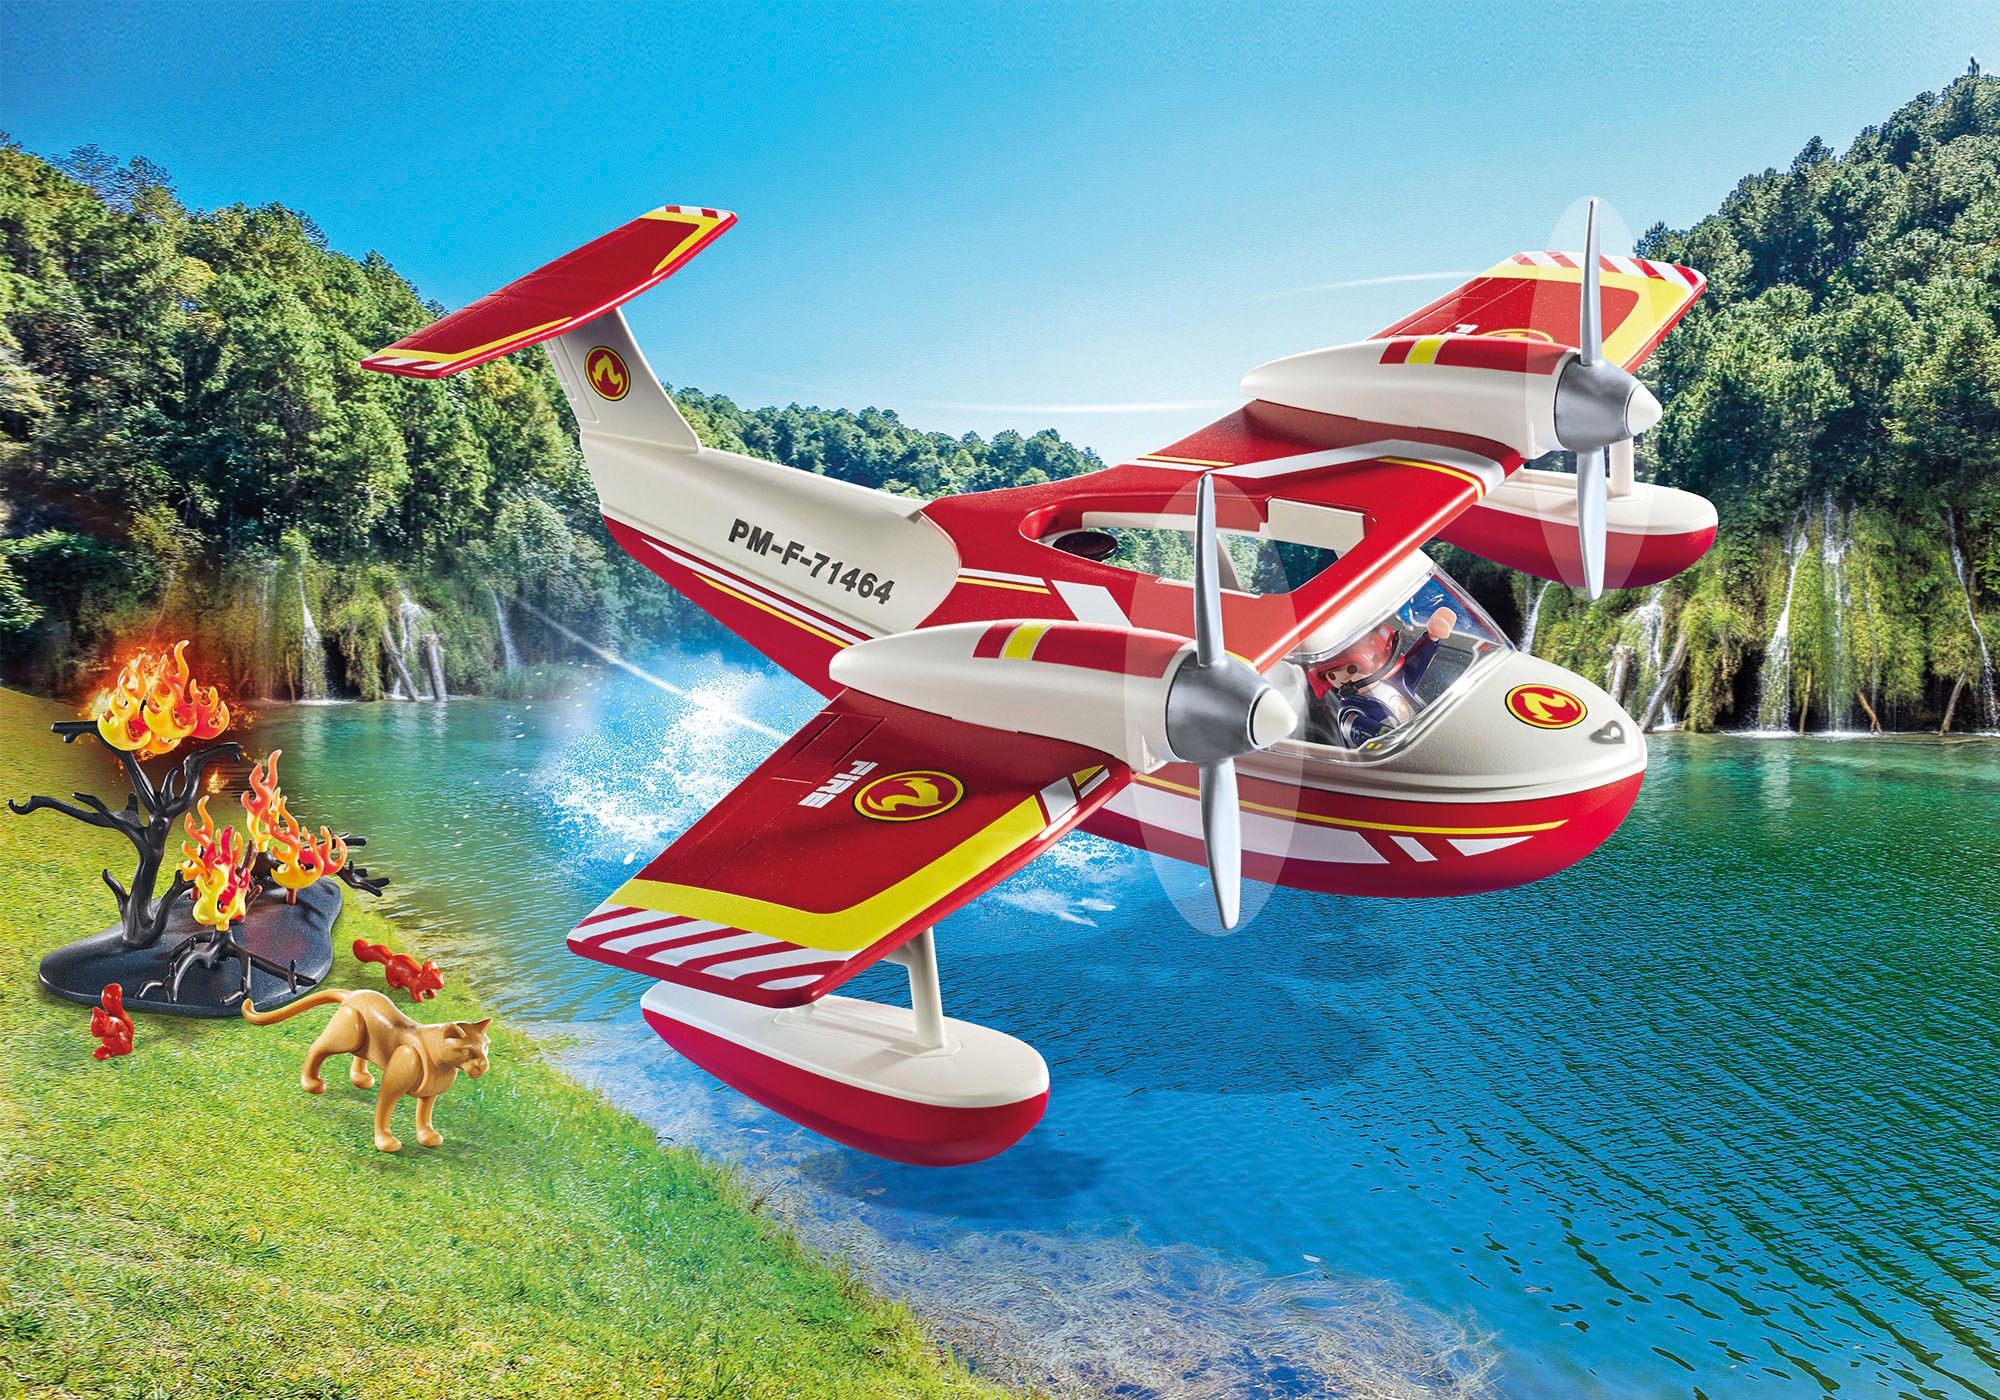 Playmobil® Konstruktions-Spielset »Feuerwehrflugzeug mit Löschfunktion (71463), Action Heroes«, (34 St.), Made in Europe